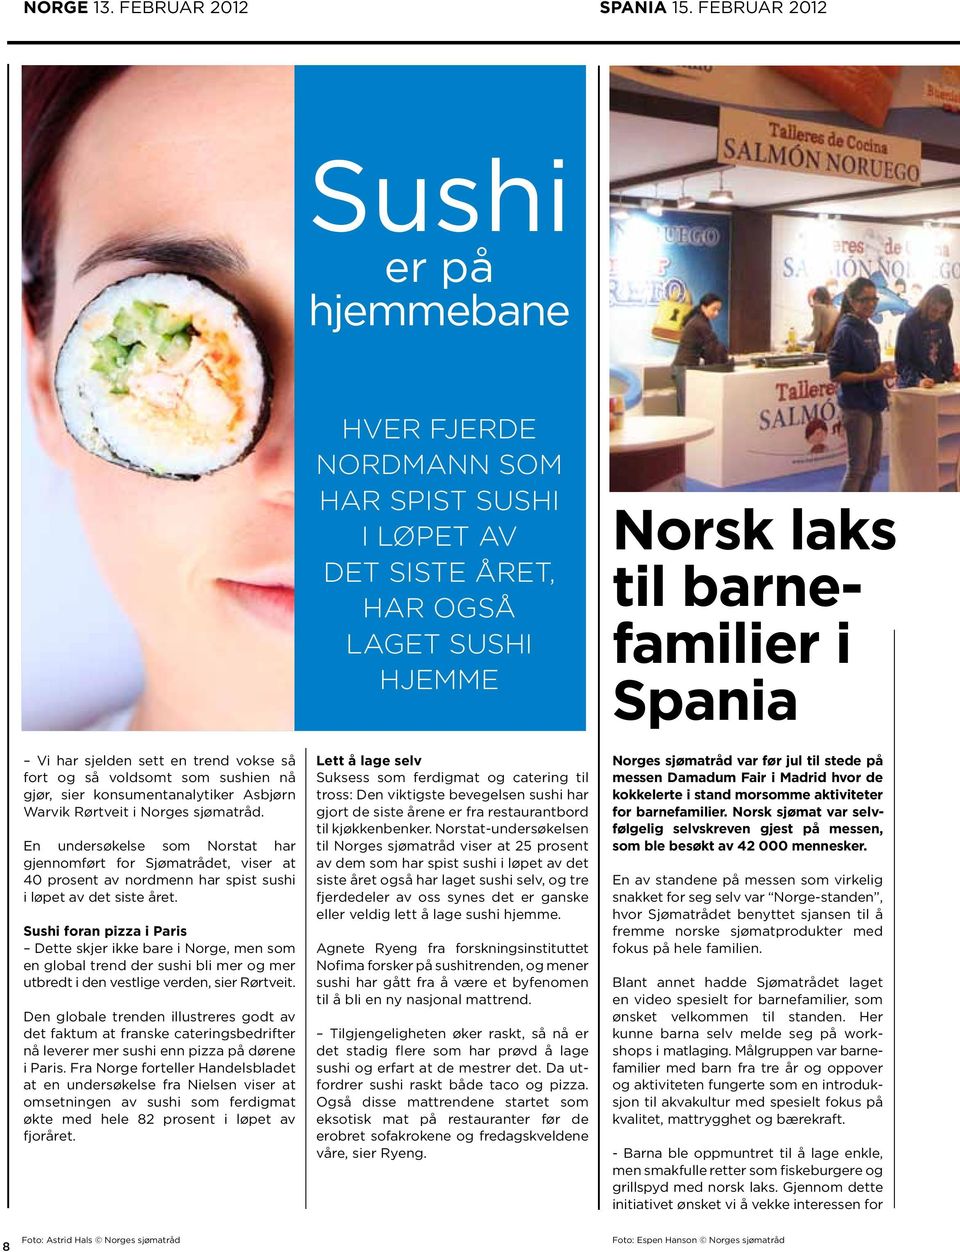 En undersøkelse som Norstat har gjennom ført for Sjømatrådet, viser at 40 prosent av nordmenn har spist sushi i løpet av det siste året.